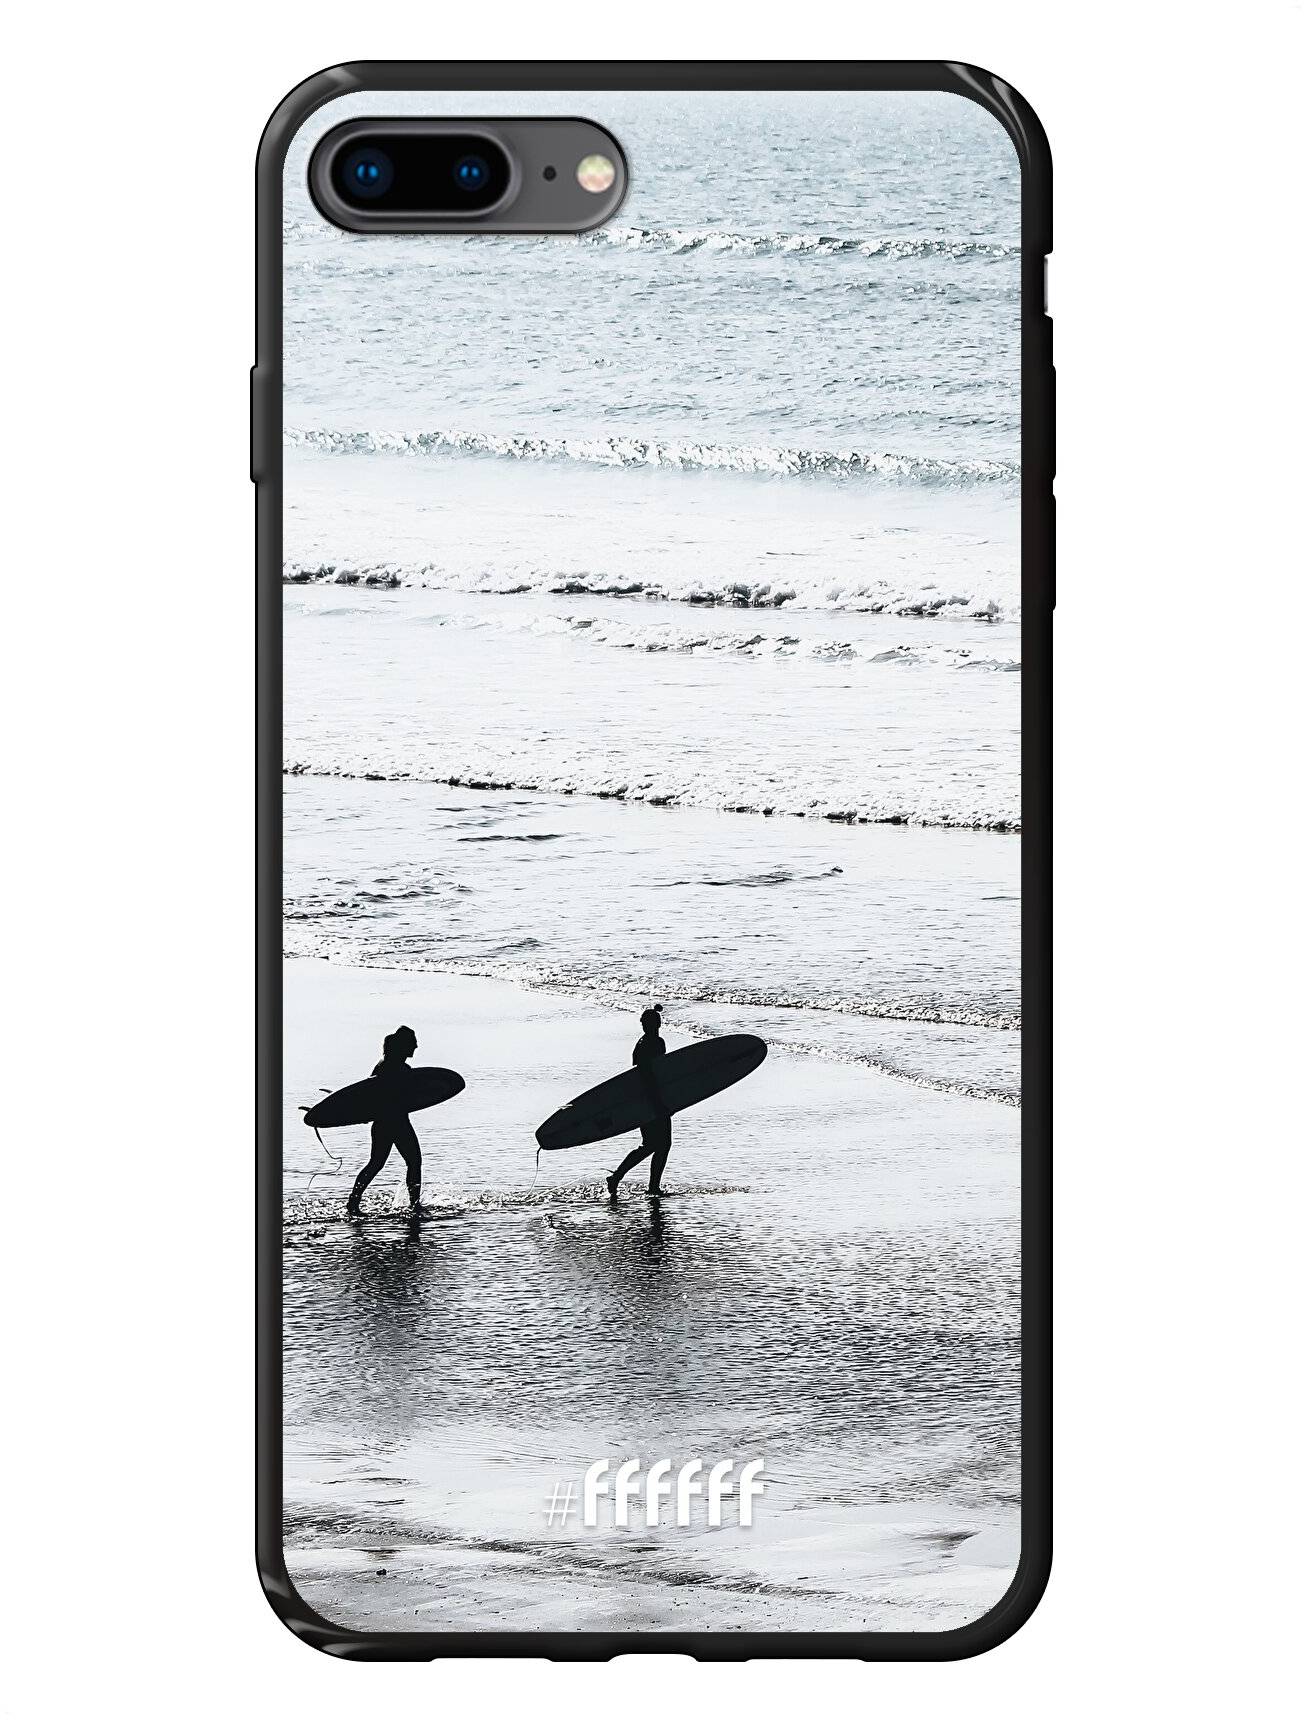 Surfing iPhone 8 Plus